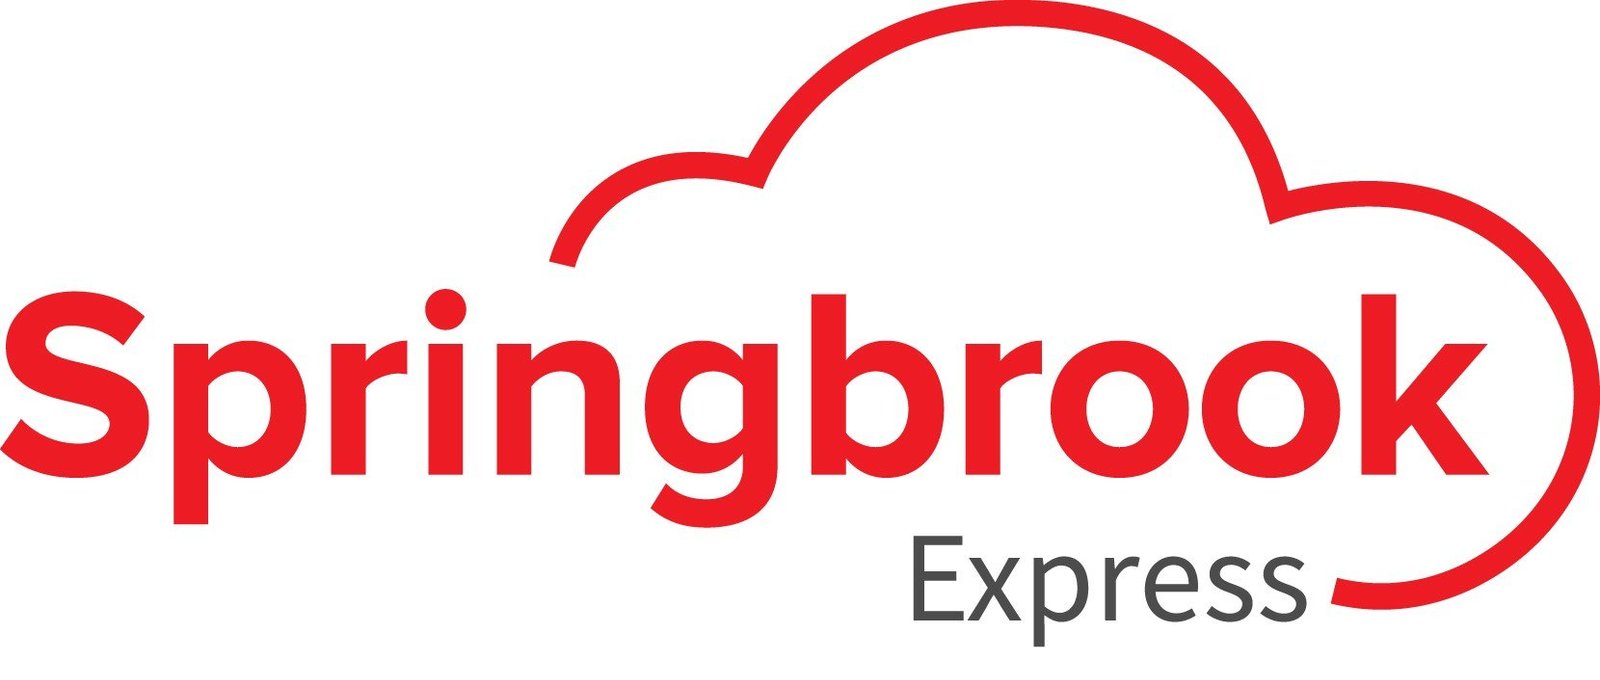 Springbrook Express Logo 2020 (1)